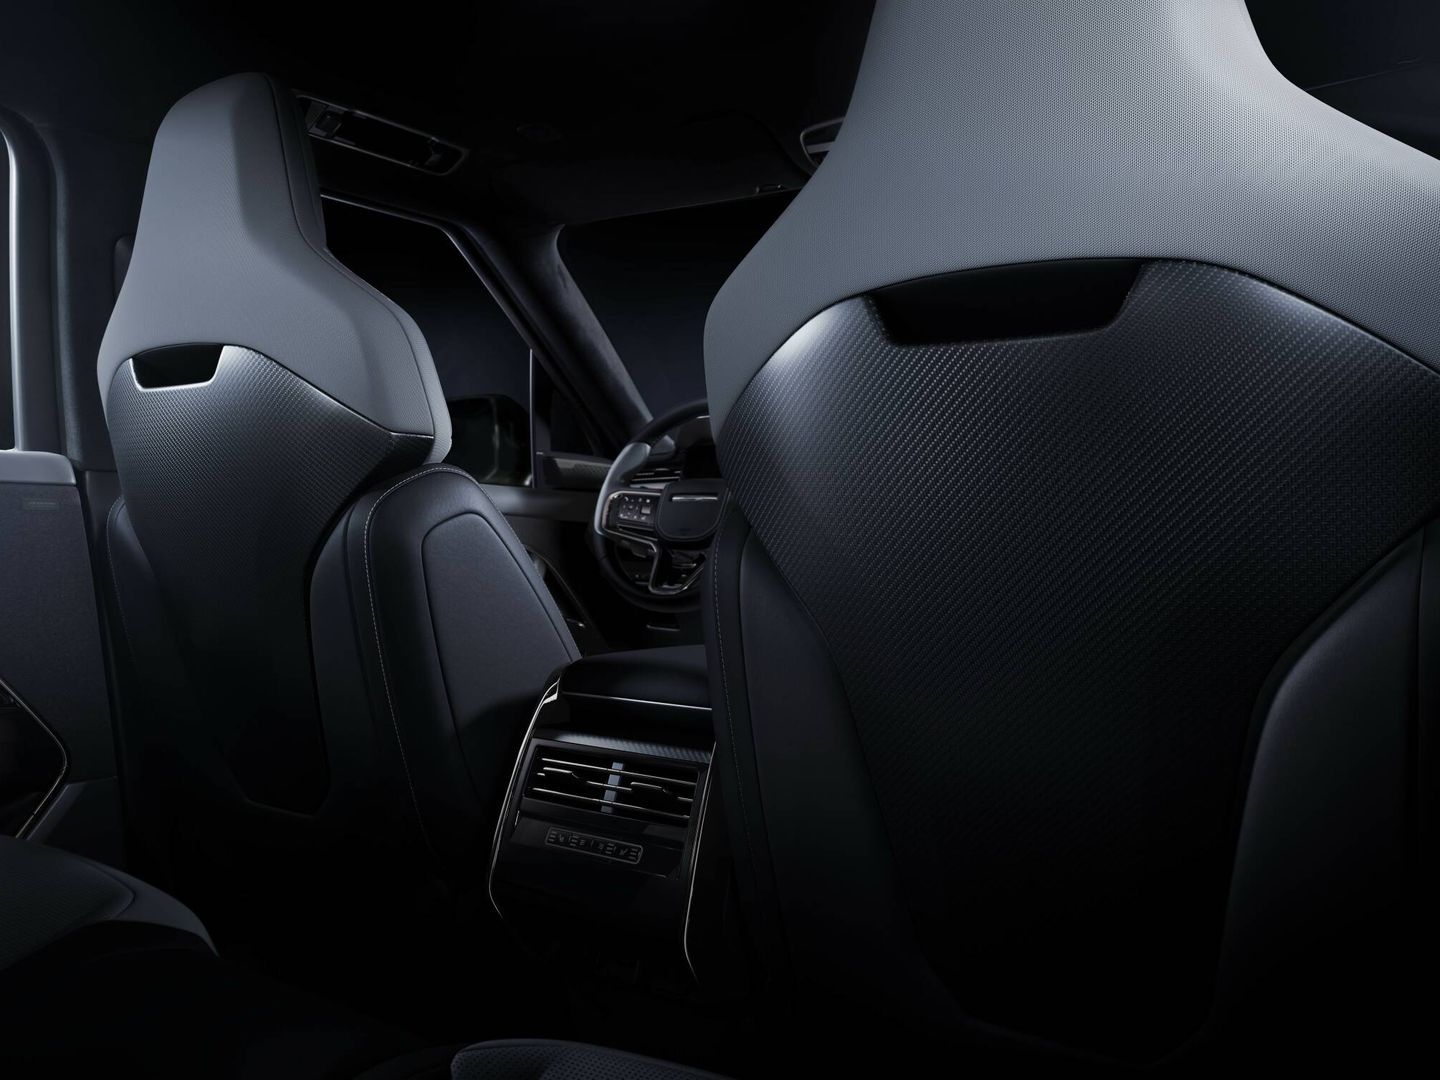 Los exclusivos asientos tienen respaldo de fibra de carbono y reposacabezas integrados.